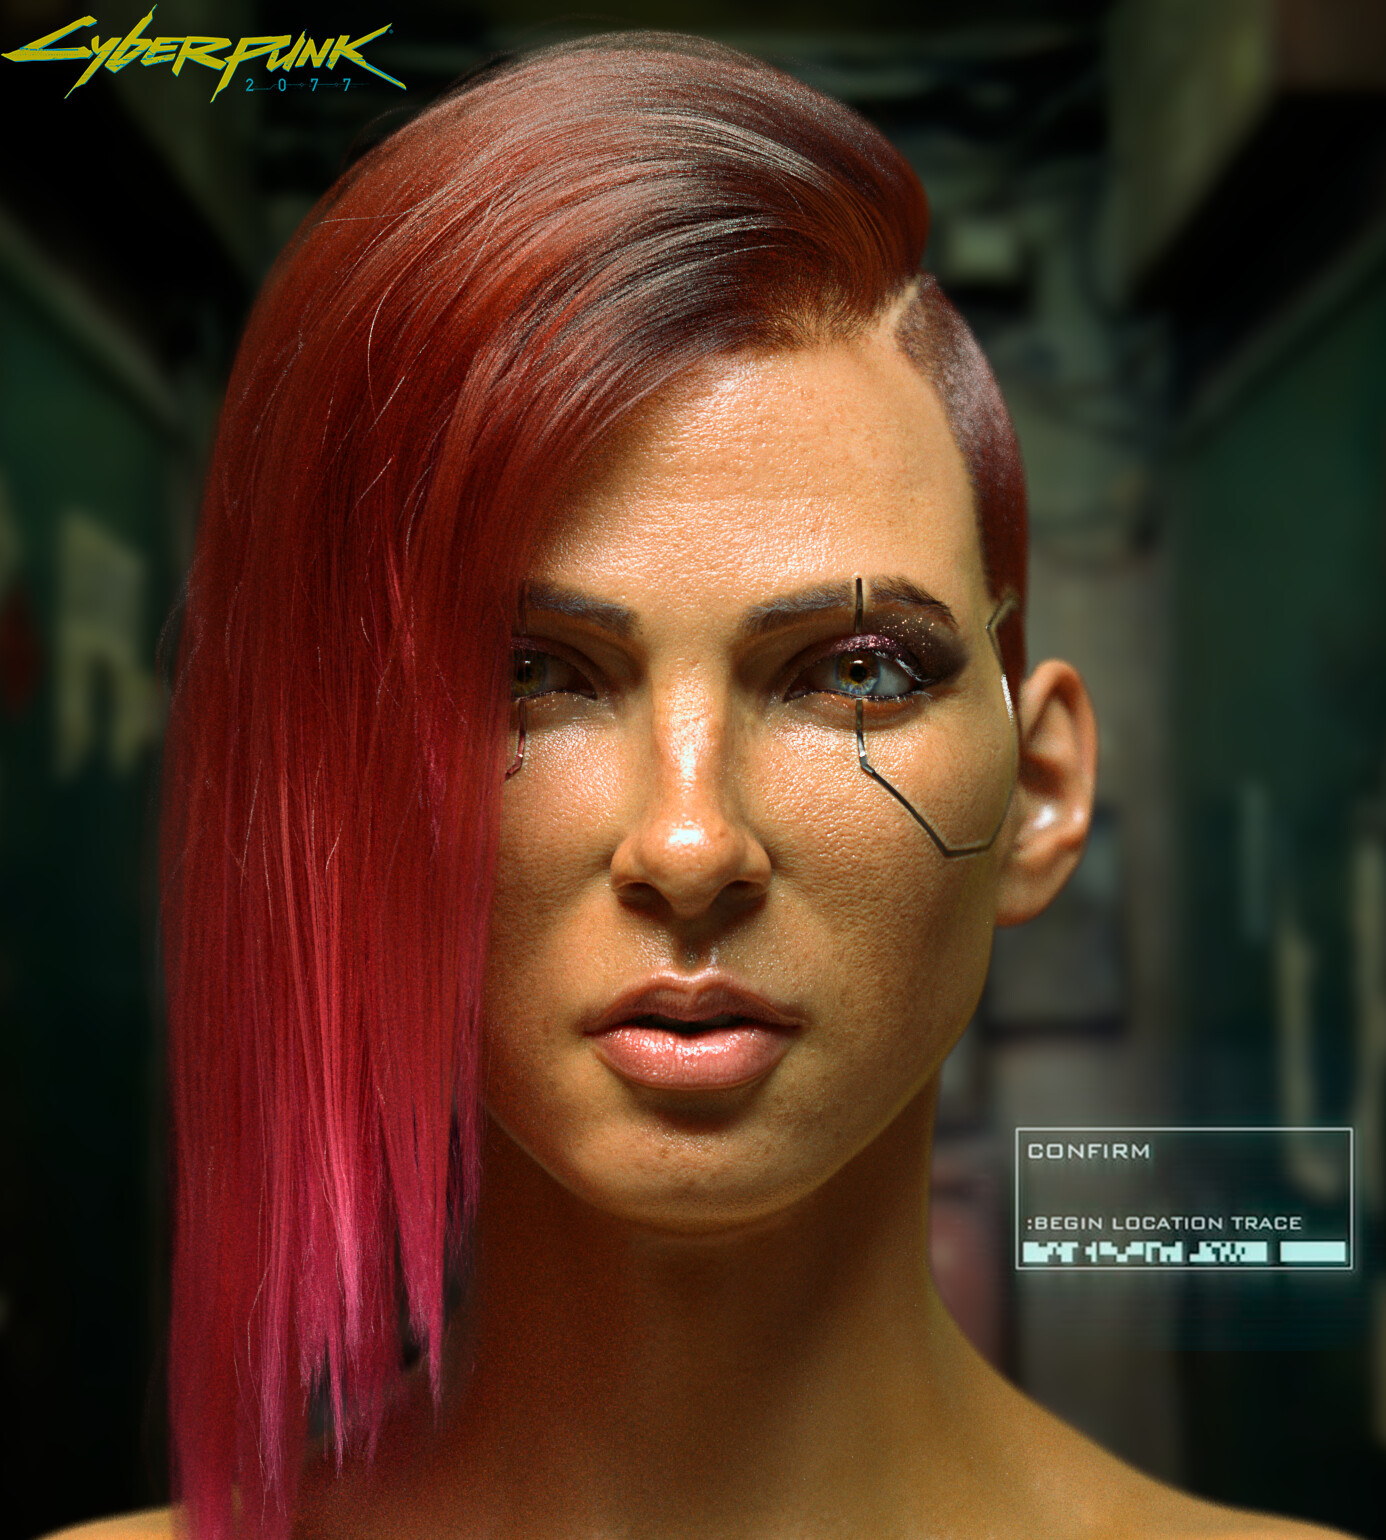 Cyberpunk 2077 V  Cyberpunk, Cyberpunk 2077, Cyberpunk character